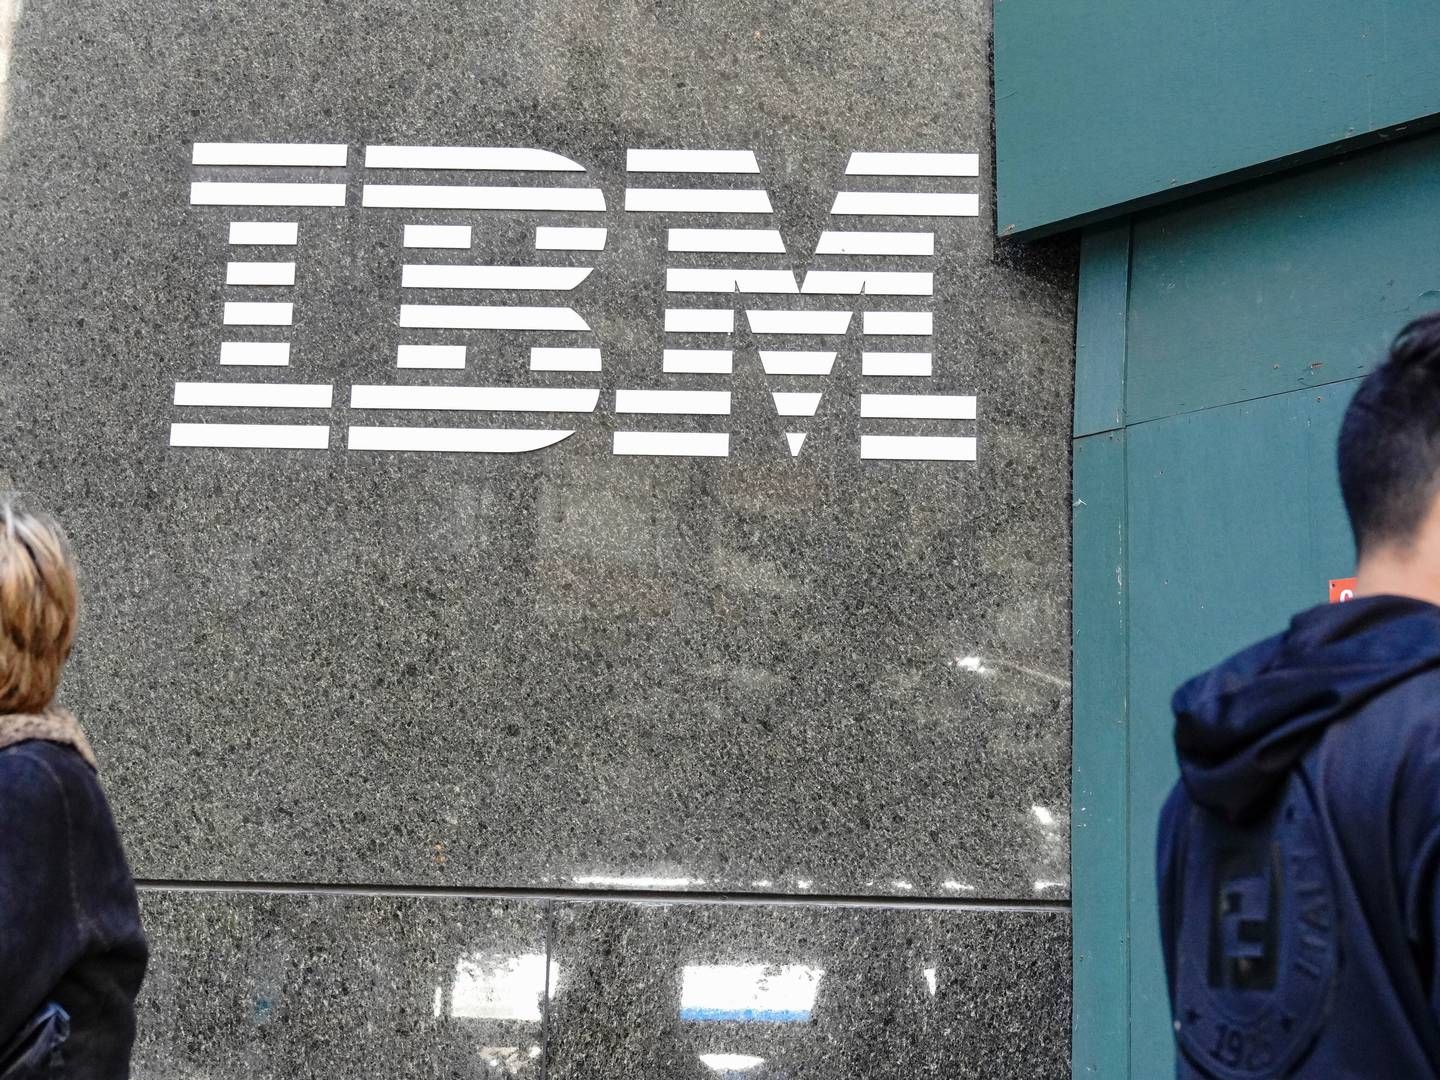 IBM suspenderer sine annoncer fra X - tidligere kendt som Twitter - efter, at Media Matters har fundet IBM-annoncer ved nazistisk indhold. | Foto: John Nacion/AP/Ritzau Scanpix